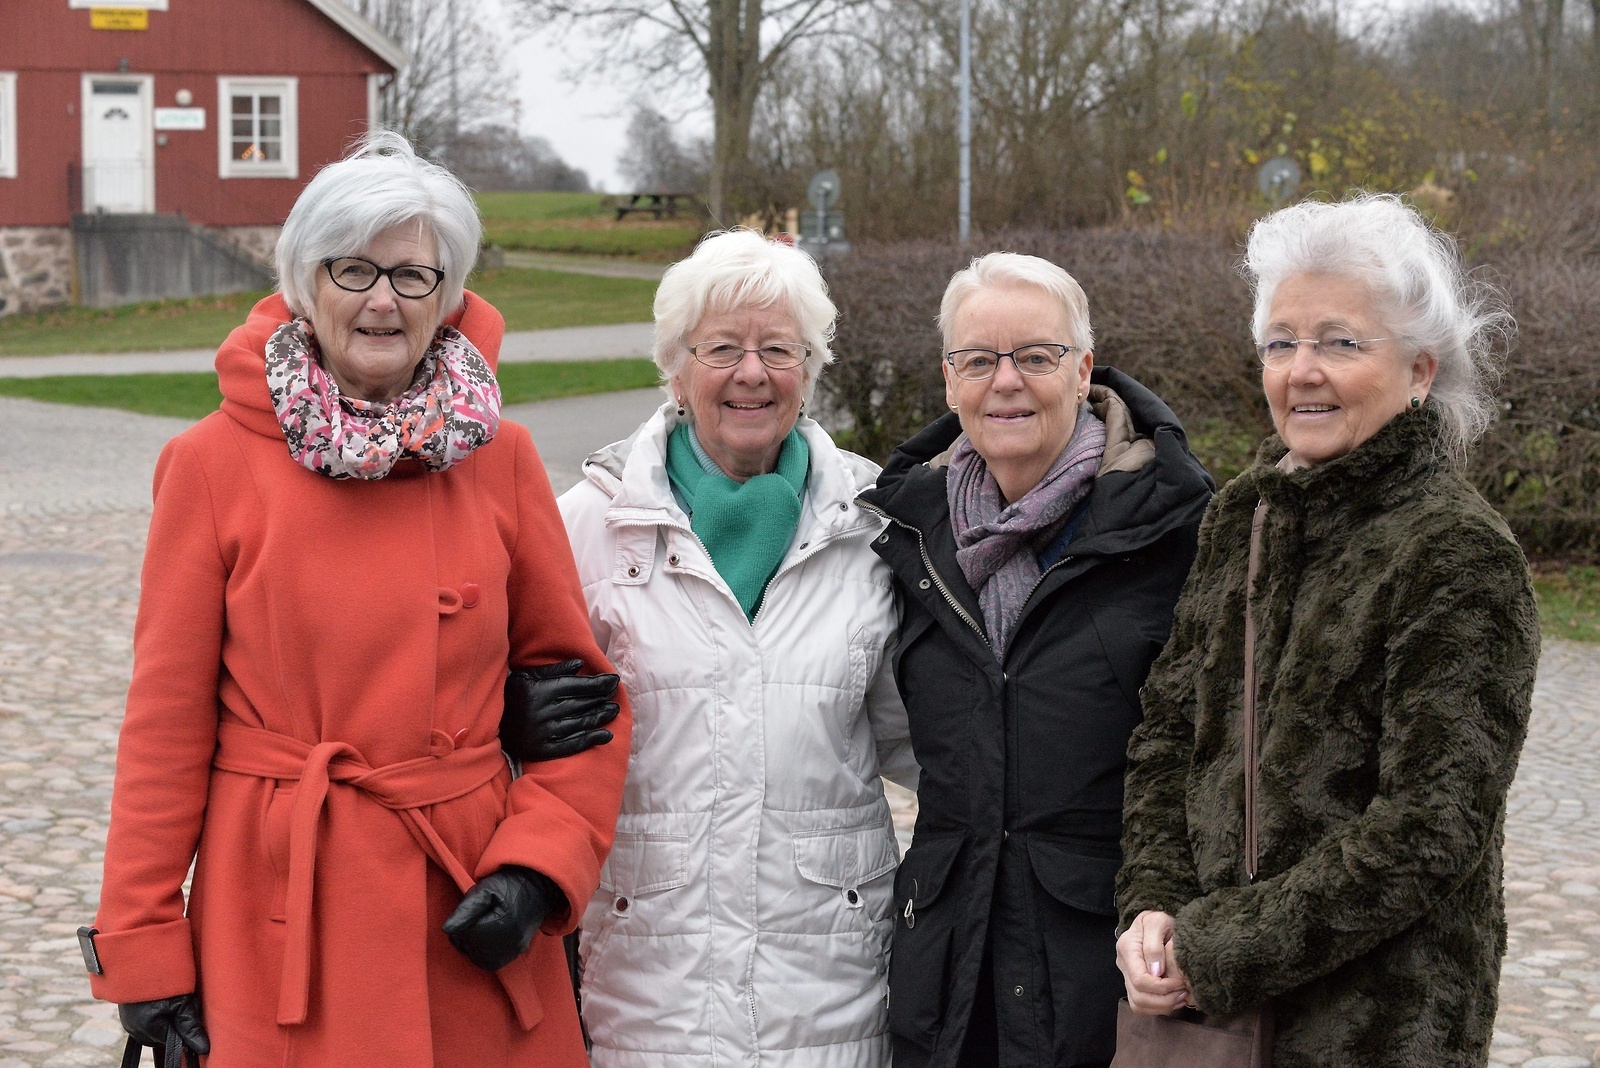 Malmöiterna Agneta Andersson, Christina Rundquist, Inger Persson och Yvonne Thorsheim var på juläventyr i Hässleholm. FOTO: Adrian Ericson